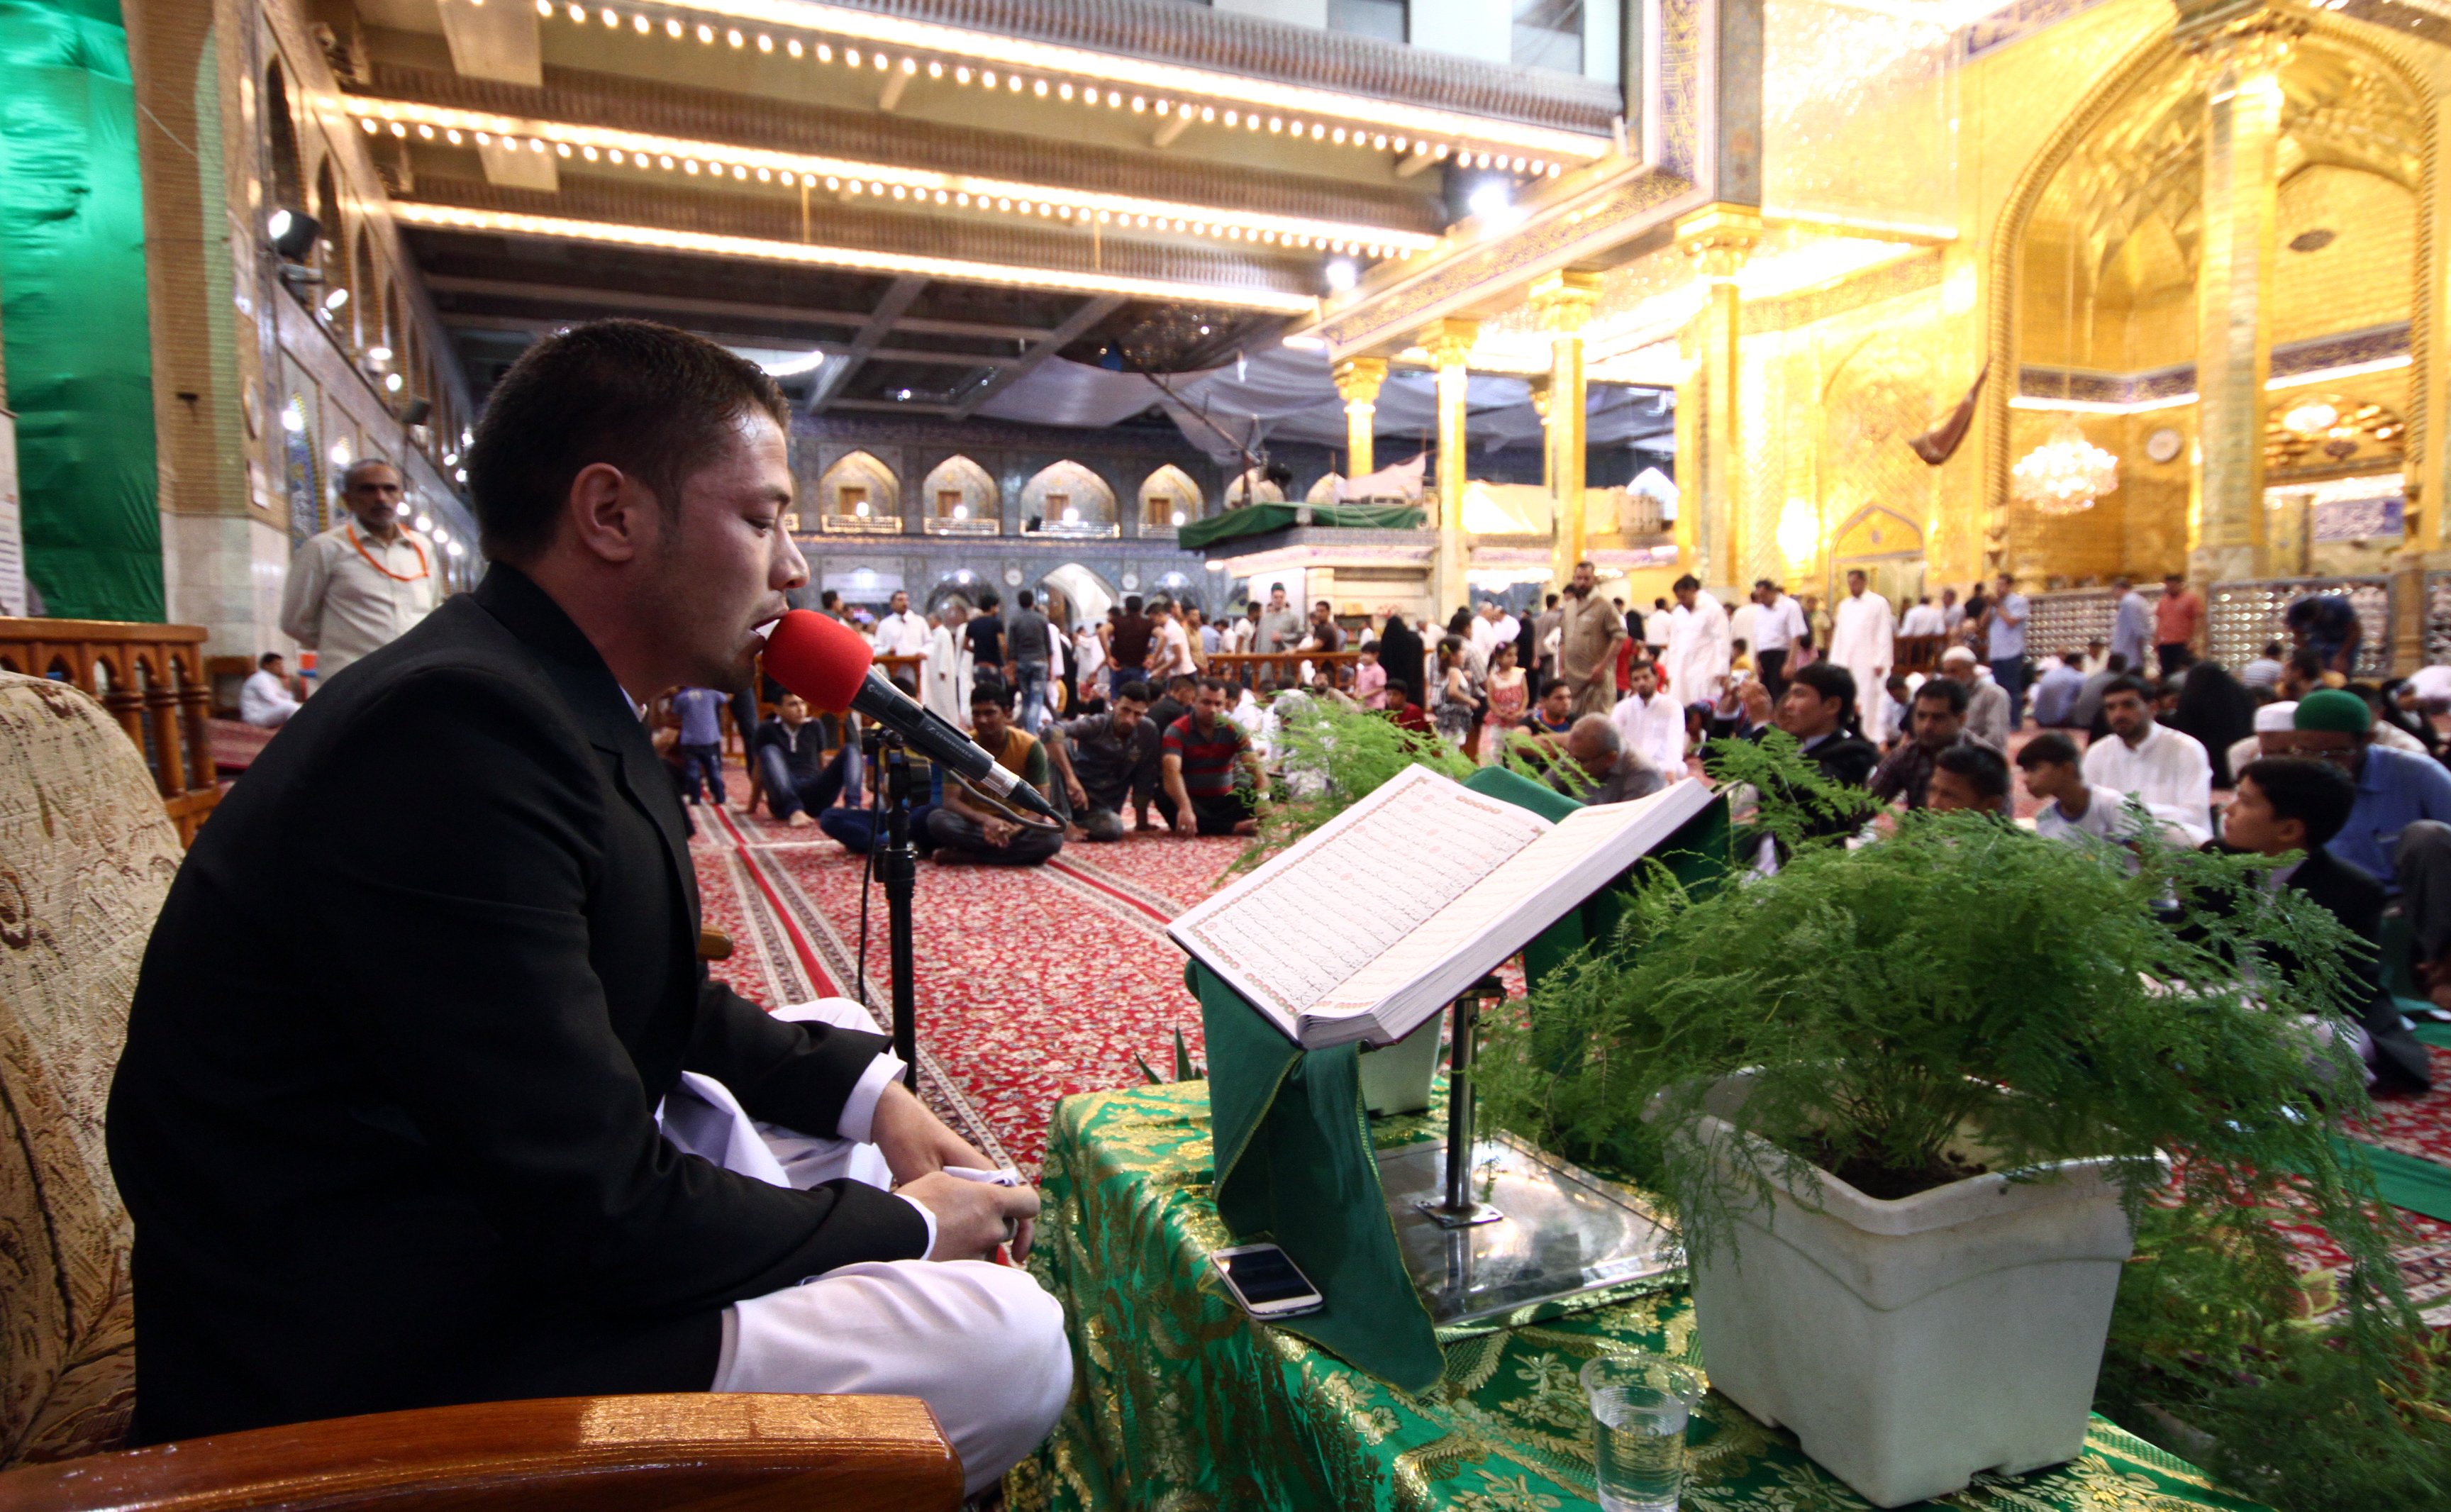 معهد القرآن الكريم يقيم أمسية قرآنية مميزة في الصحن العباسي الشريف